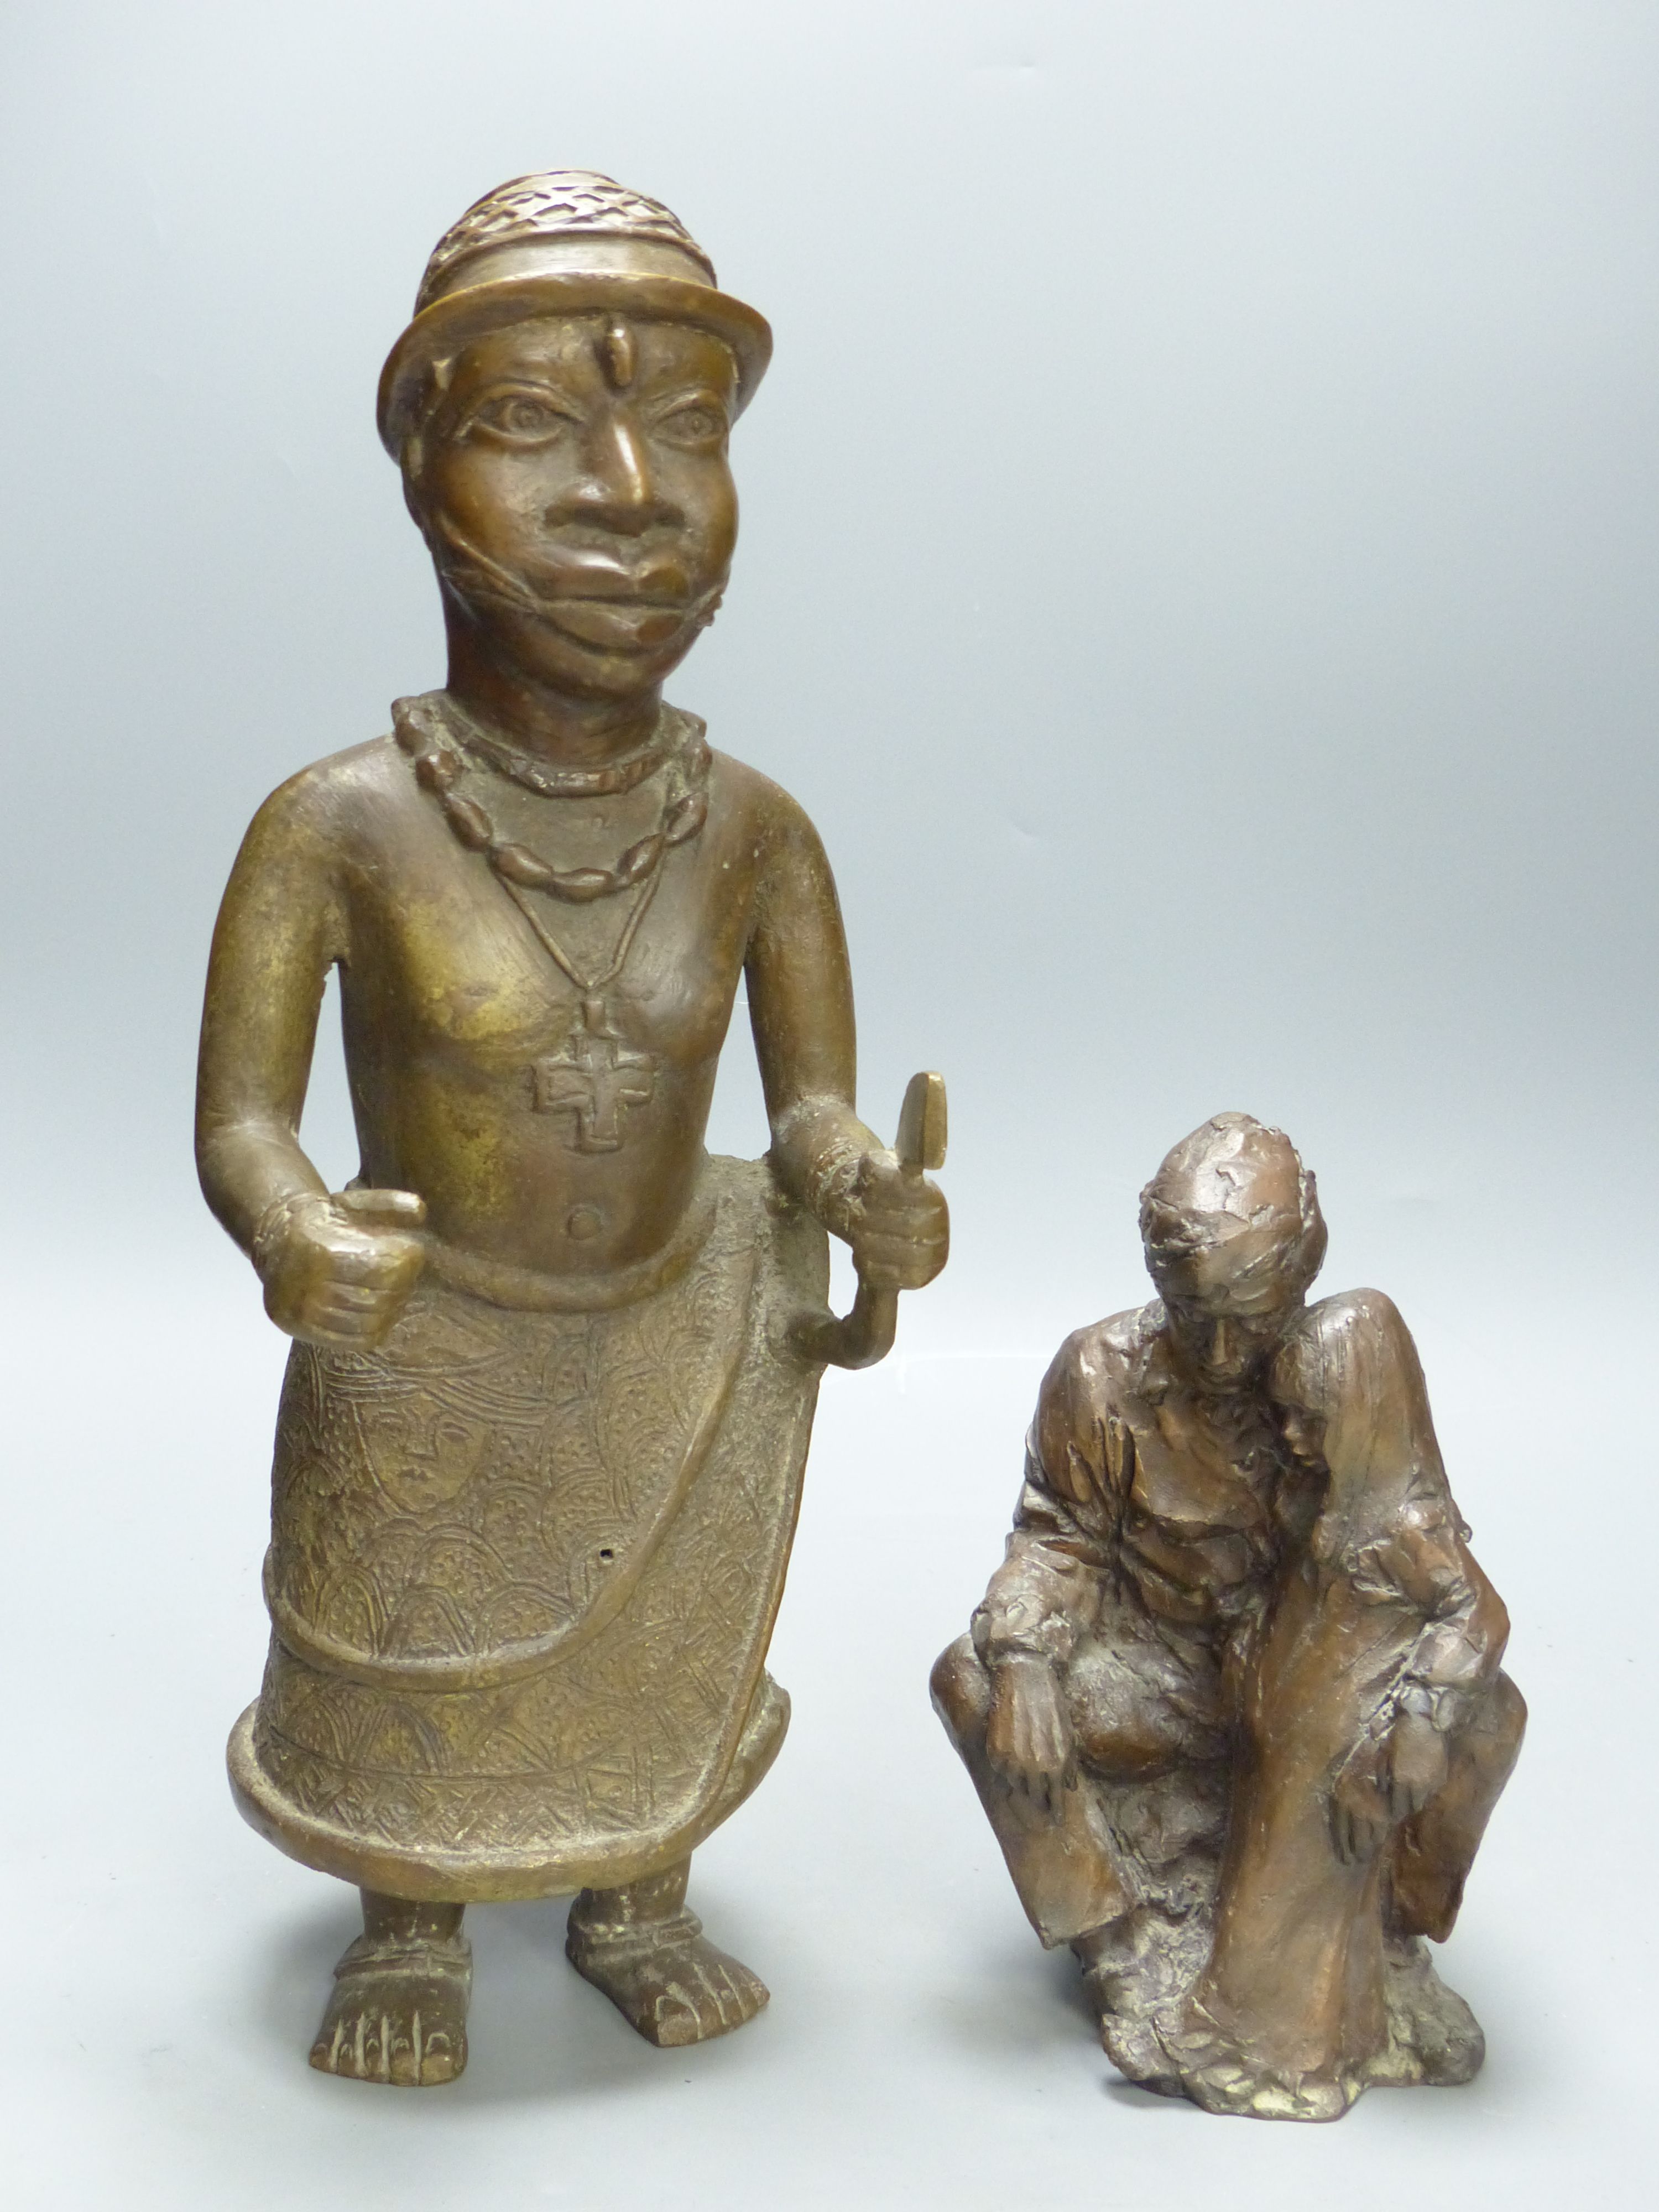 An African bronze figure and a modern bronze figure group